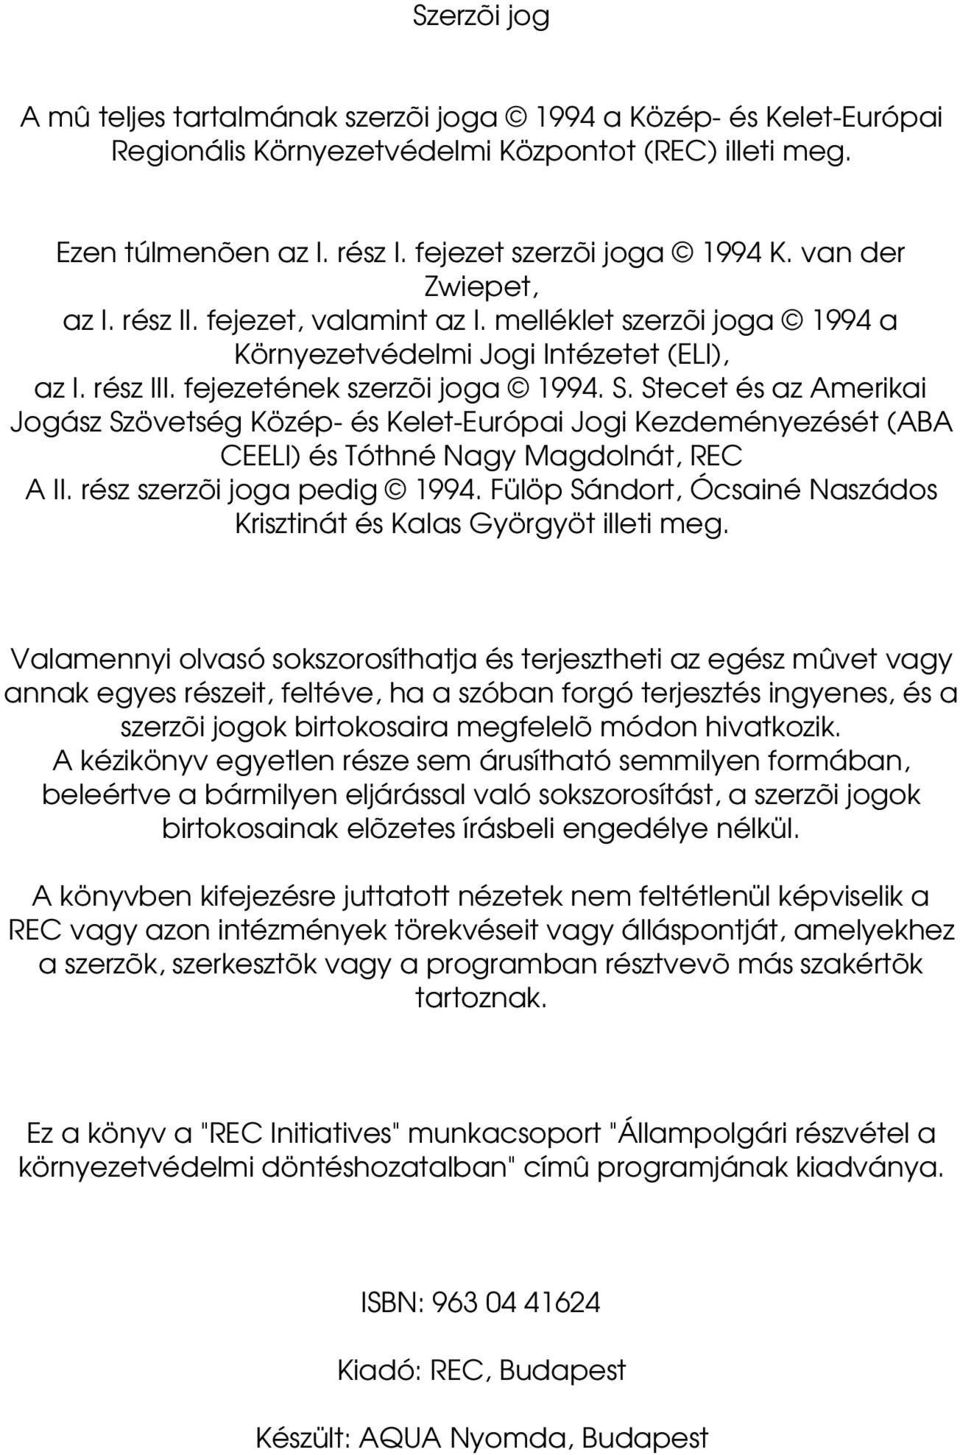 Stecet és az Amerikai Jogász Szövetség Közép- és Kelet-Európai Jogi Kezdeményezését (ABA CEELI) és Tóthné Nagy Magdolnát, REC A II. rész szerzõi joga pedig 1994.